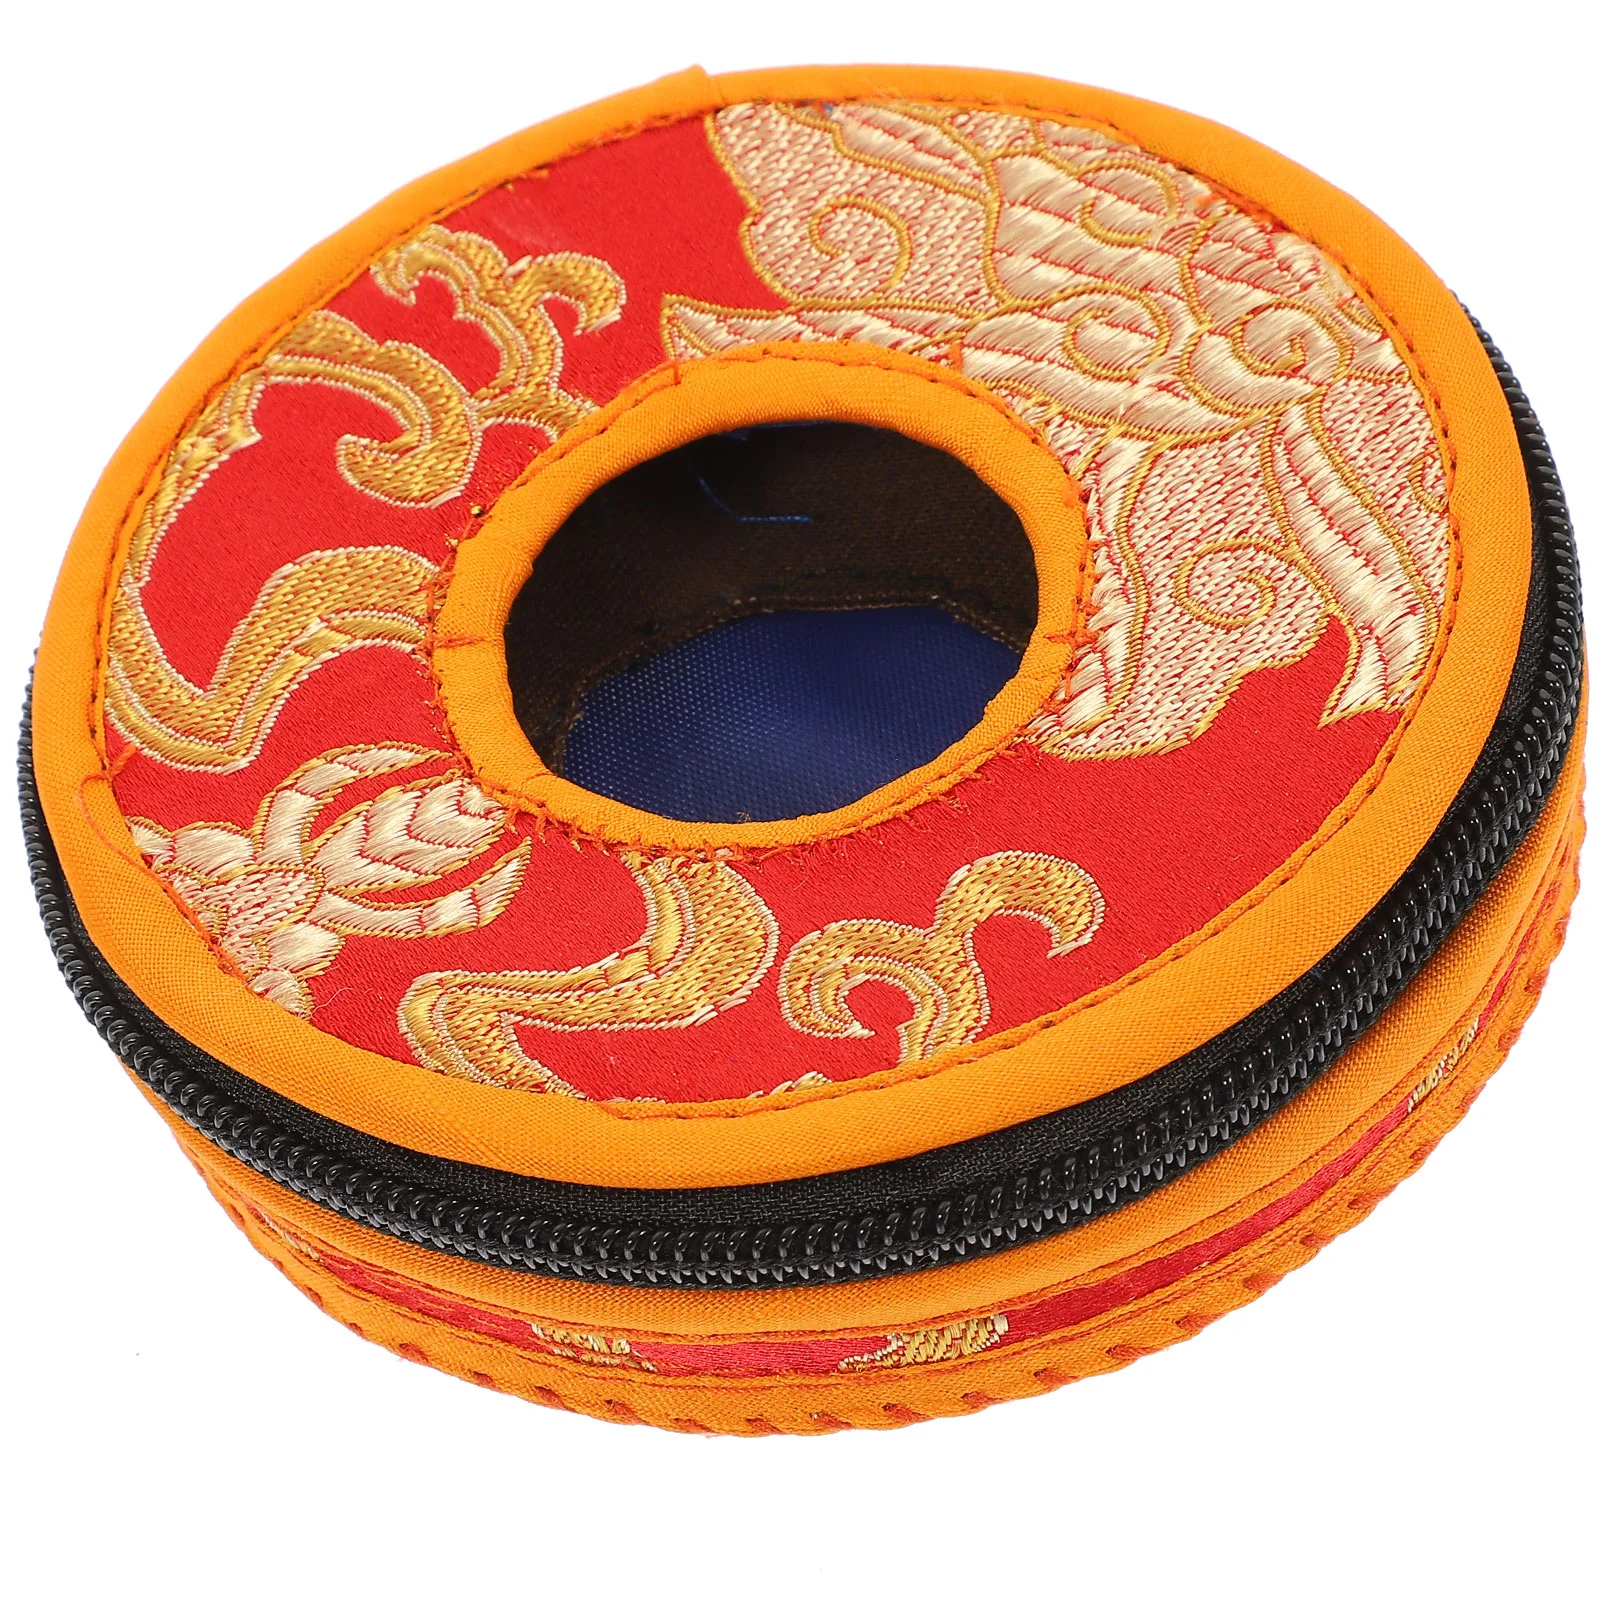 Непал медитации, колокол чехол для хранения колокольчик упаковку Непал медитация колокол рукав выдвижных упаковка сейфа кольцо